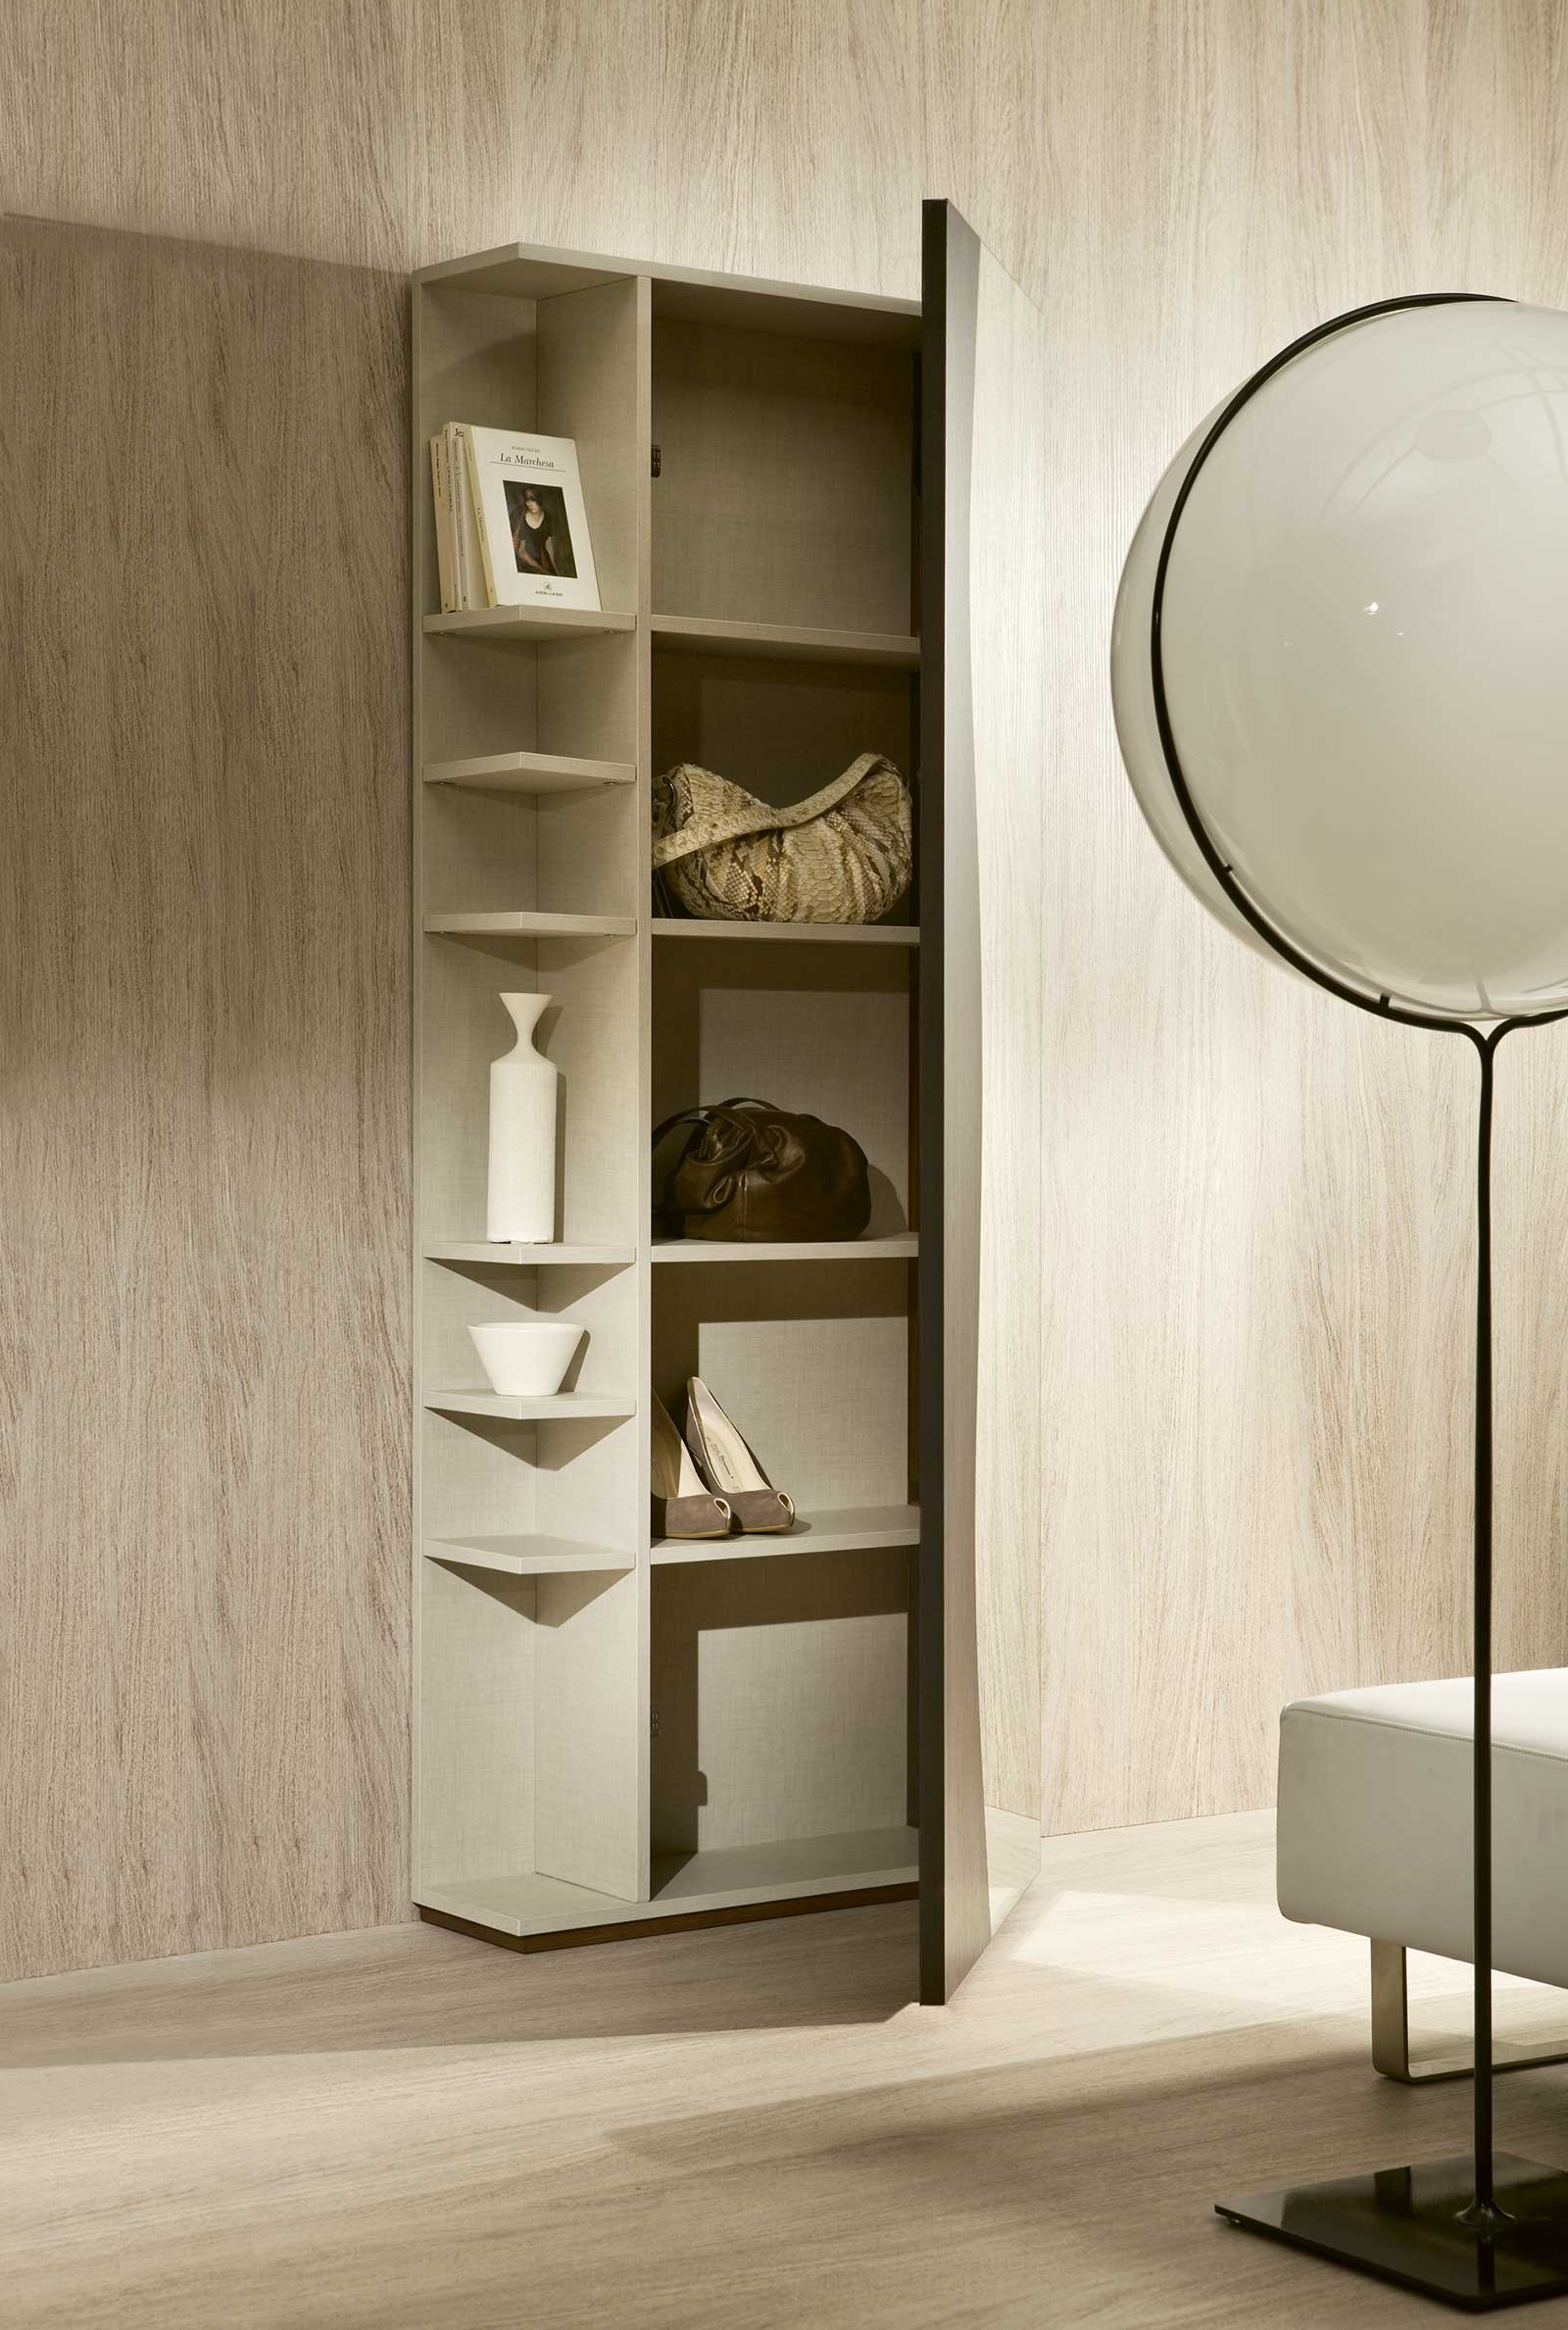 Meuble d'entrée en bois et miroir avec étagères. Vente en ligne de meubles design hauts de gamme made in Italy. Livraison gratuite.